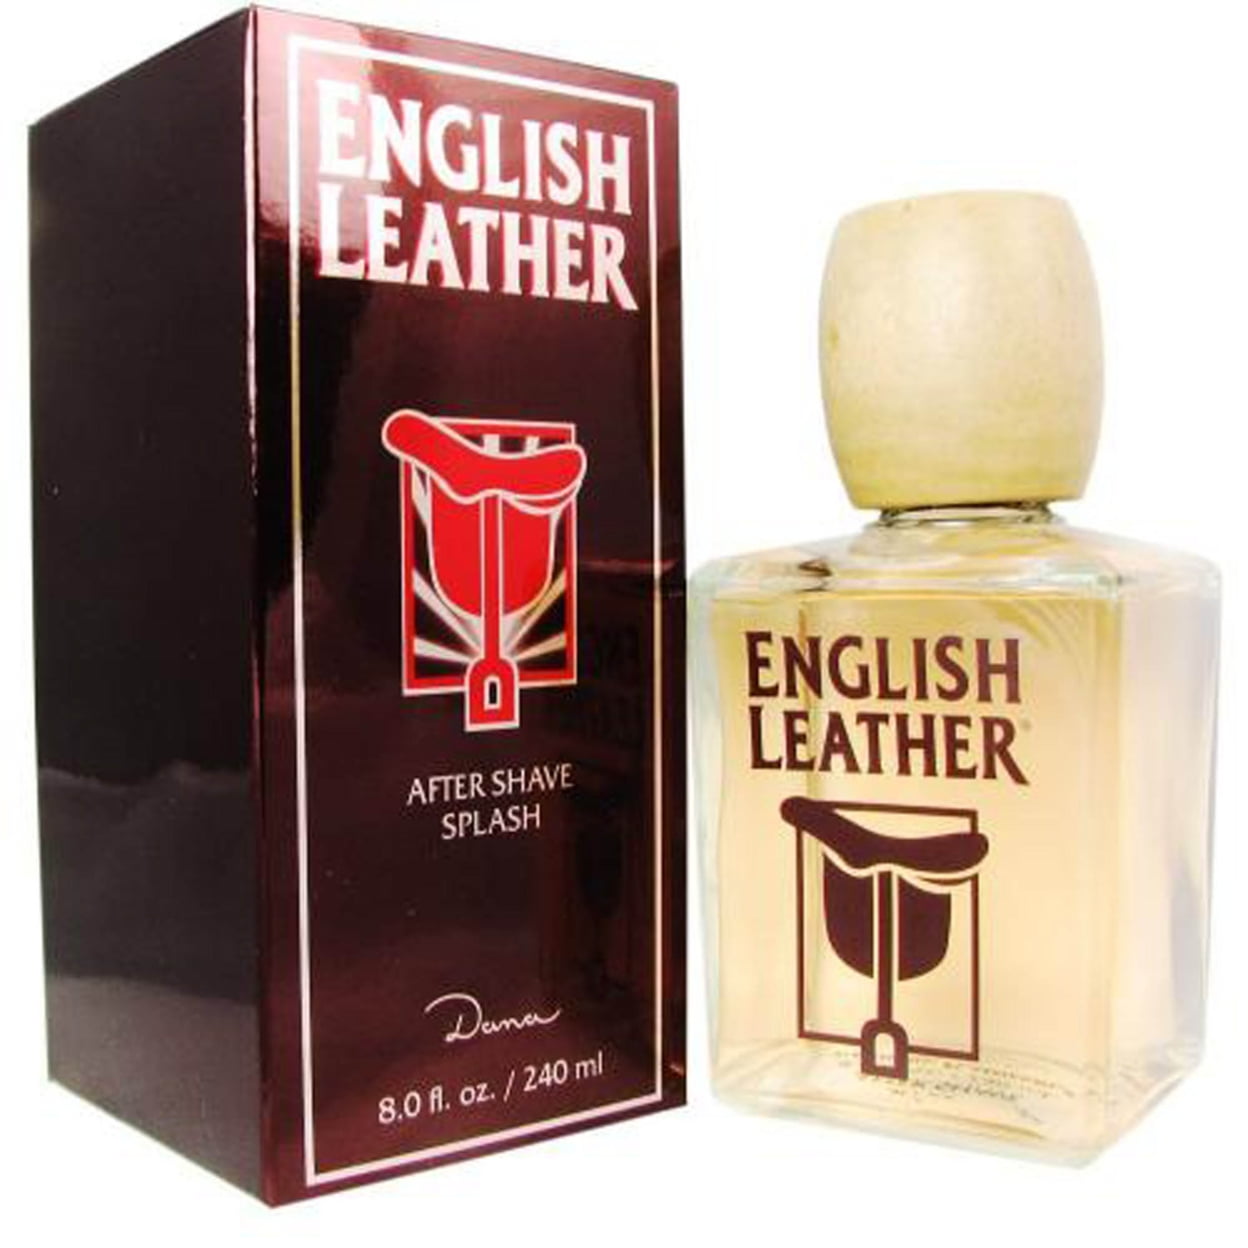  English Leather Cologne by Dana Eau De Cologne Splash 8.0  ounces : Beauty & Personal Care